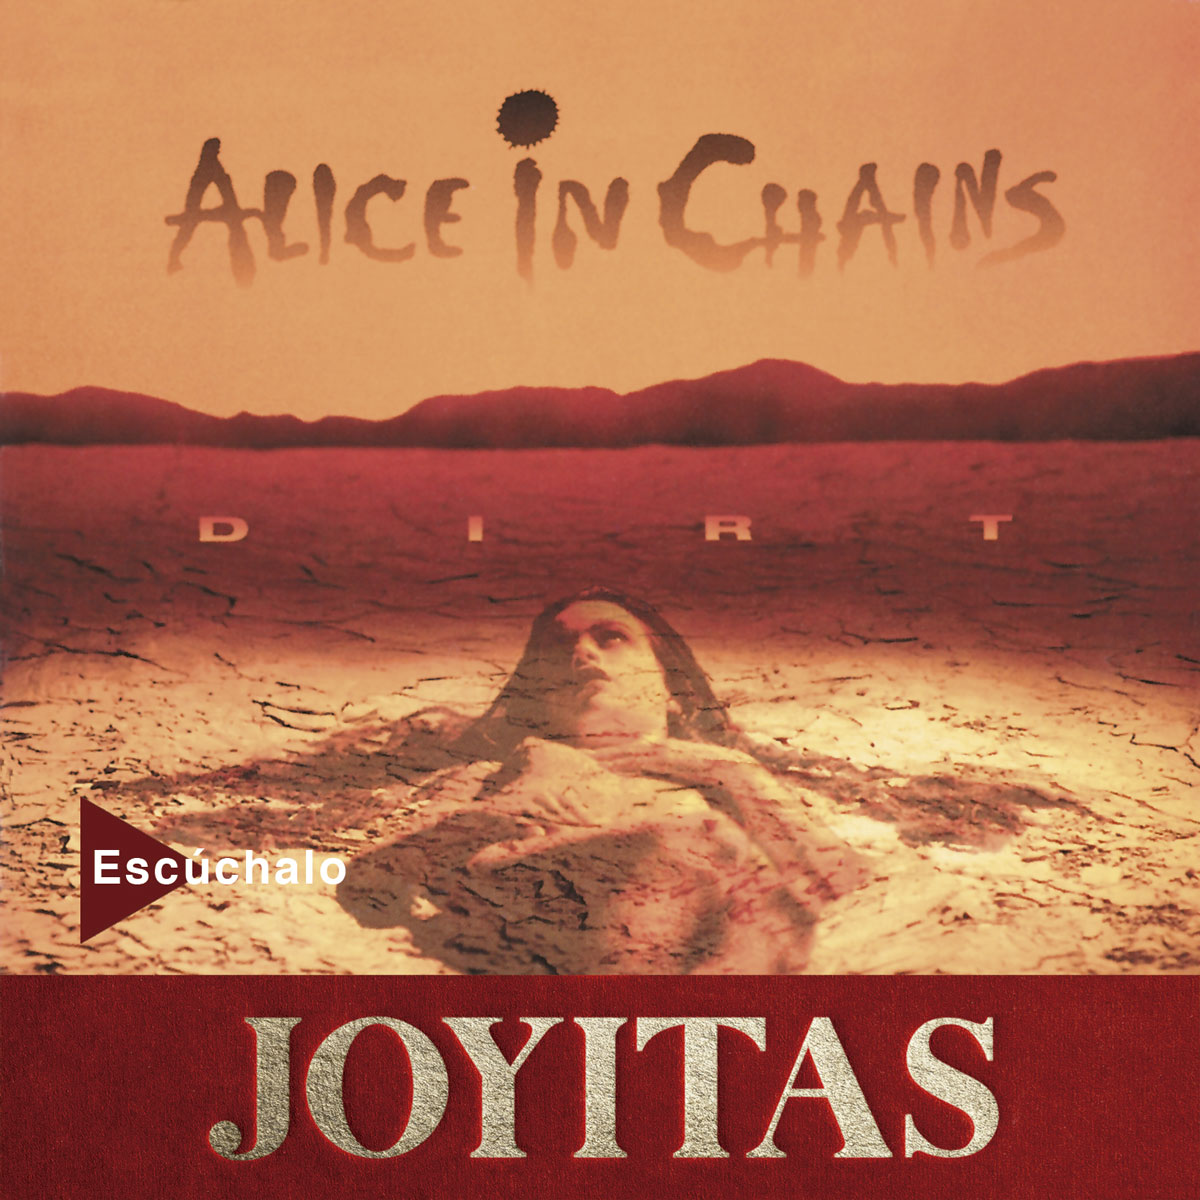 Alice in Chains reedita 'Dirt' en vinilo por su 30 aniversario